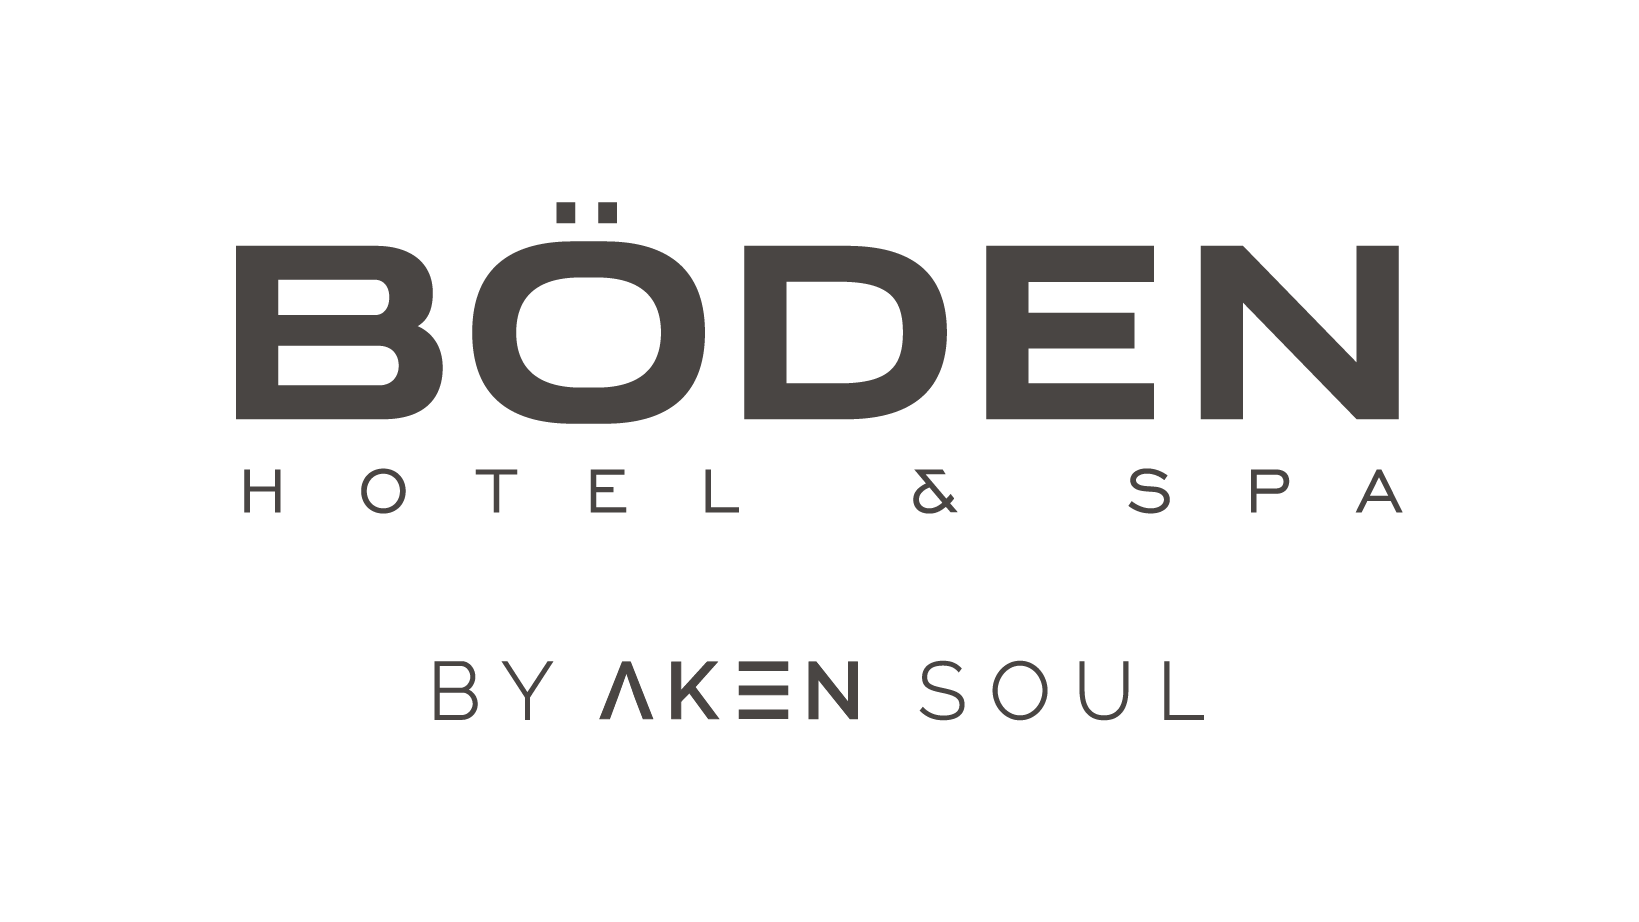 Böden Hotel & Spa by AKEN Soul